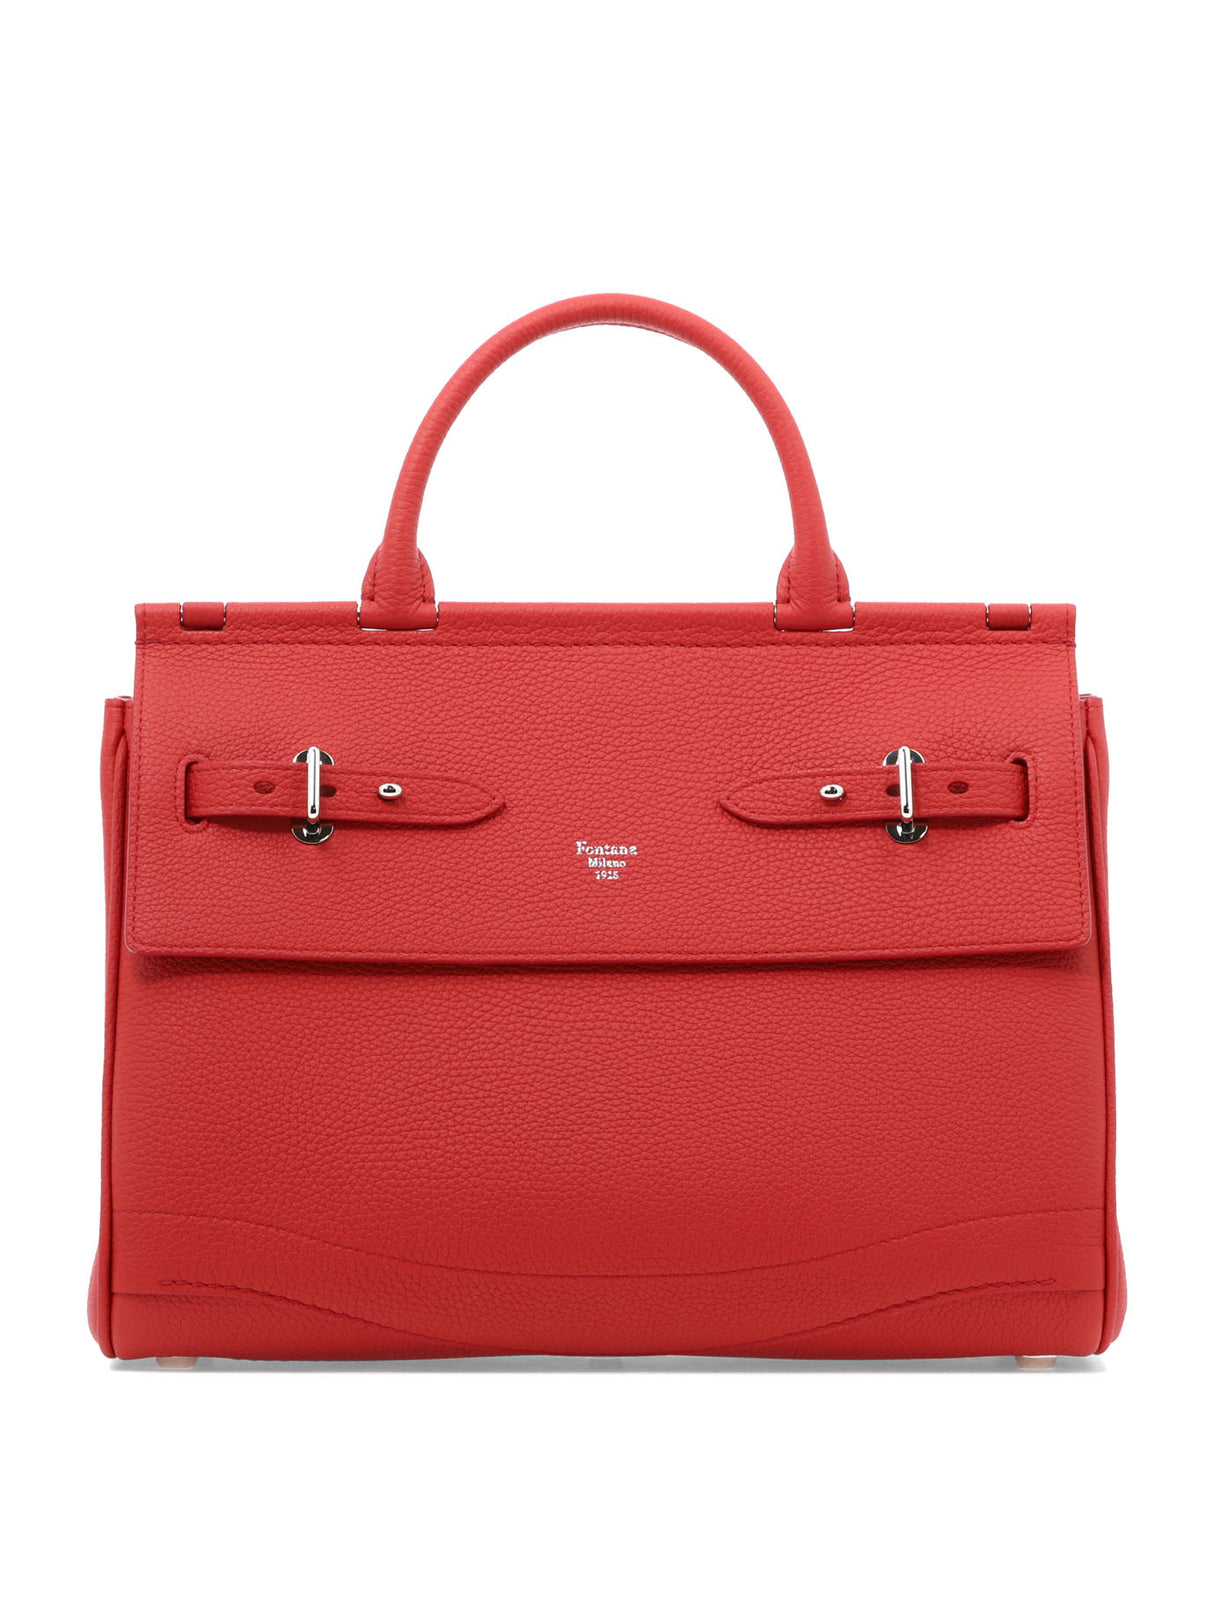 紅色真皮手提包帶有腰帶設計和開放式口袋，適合女性